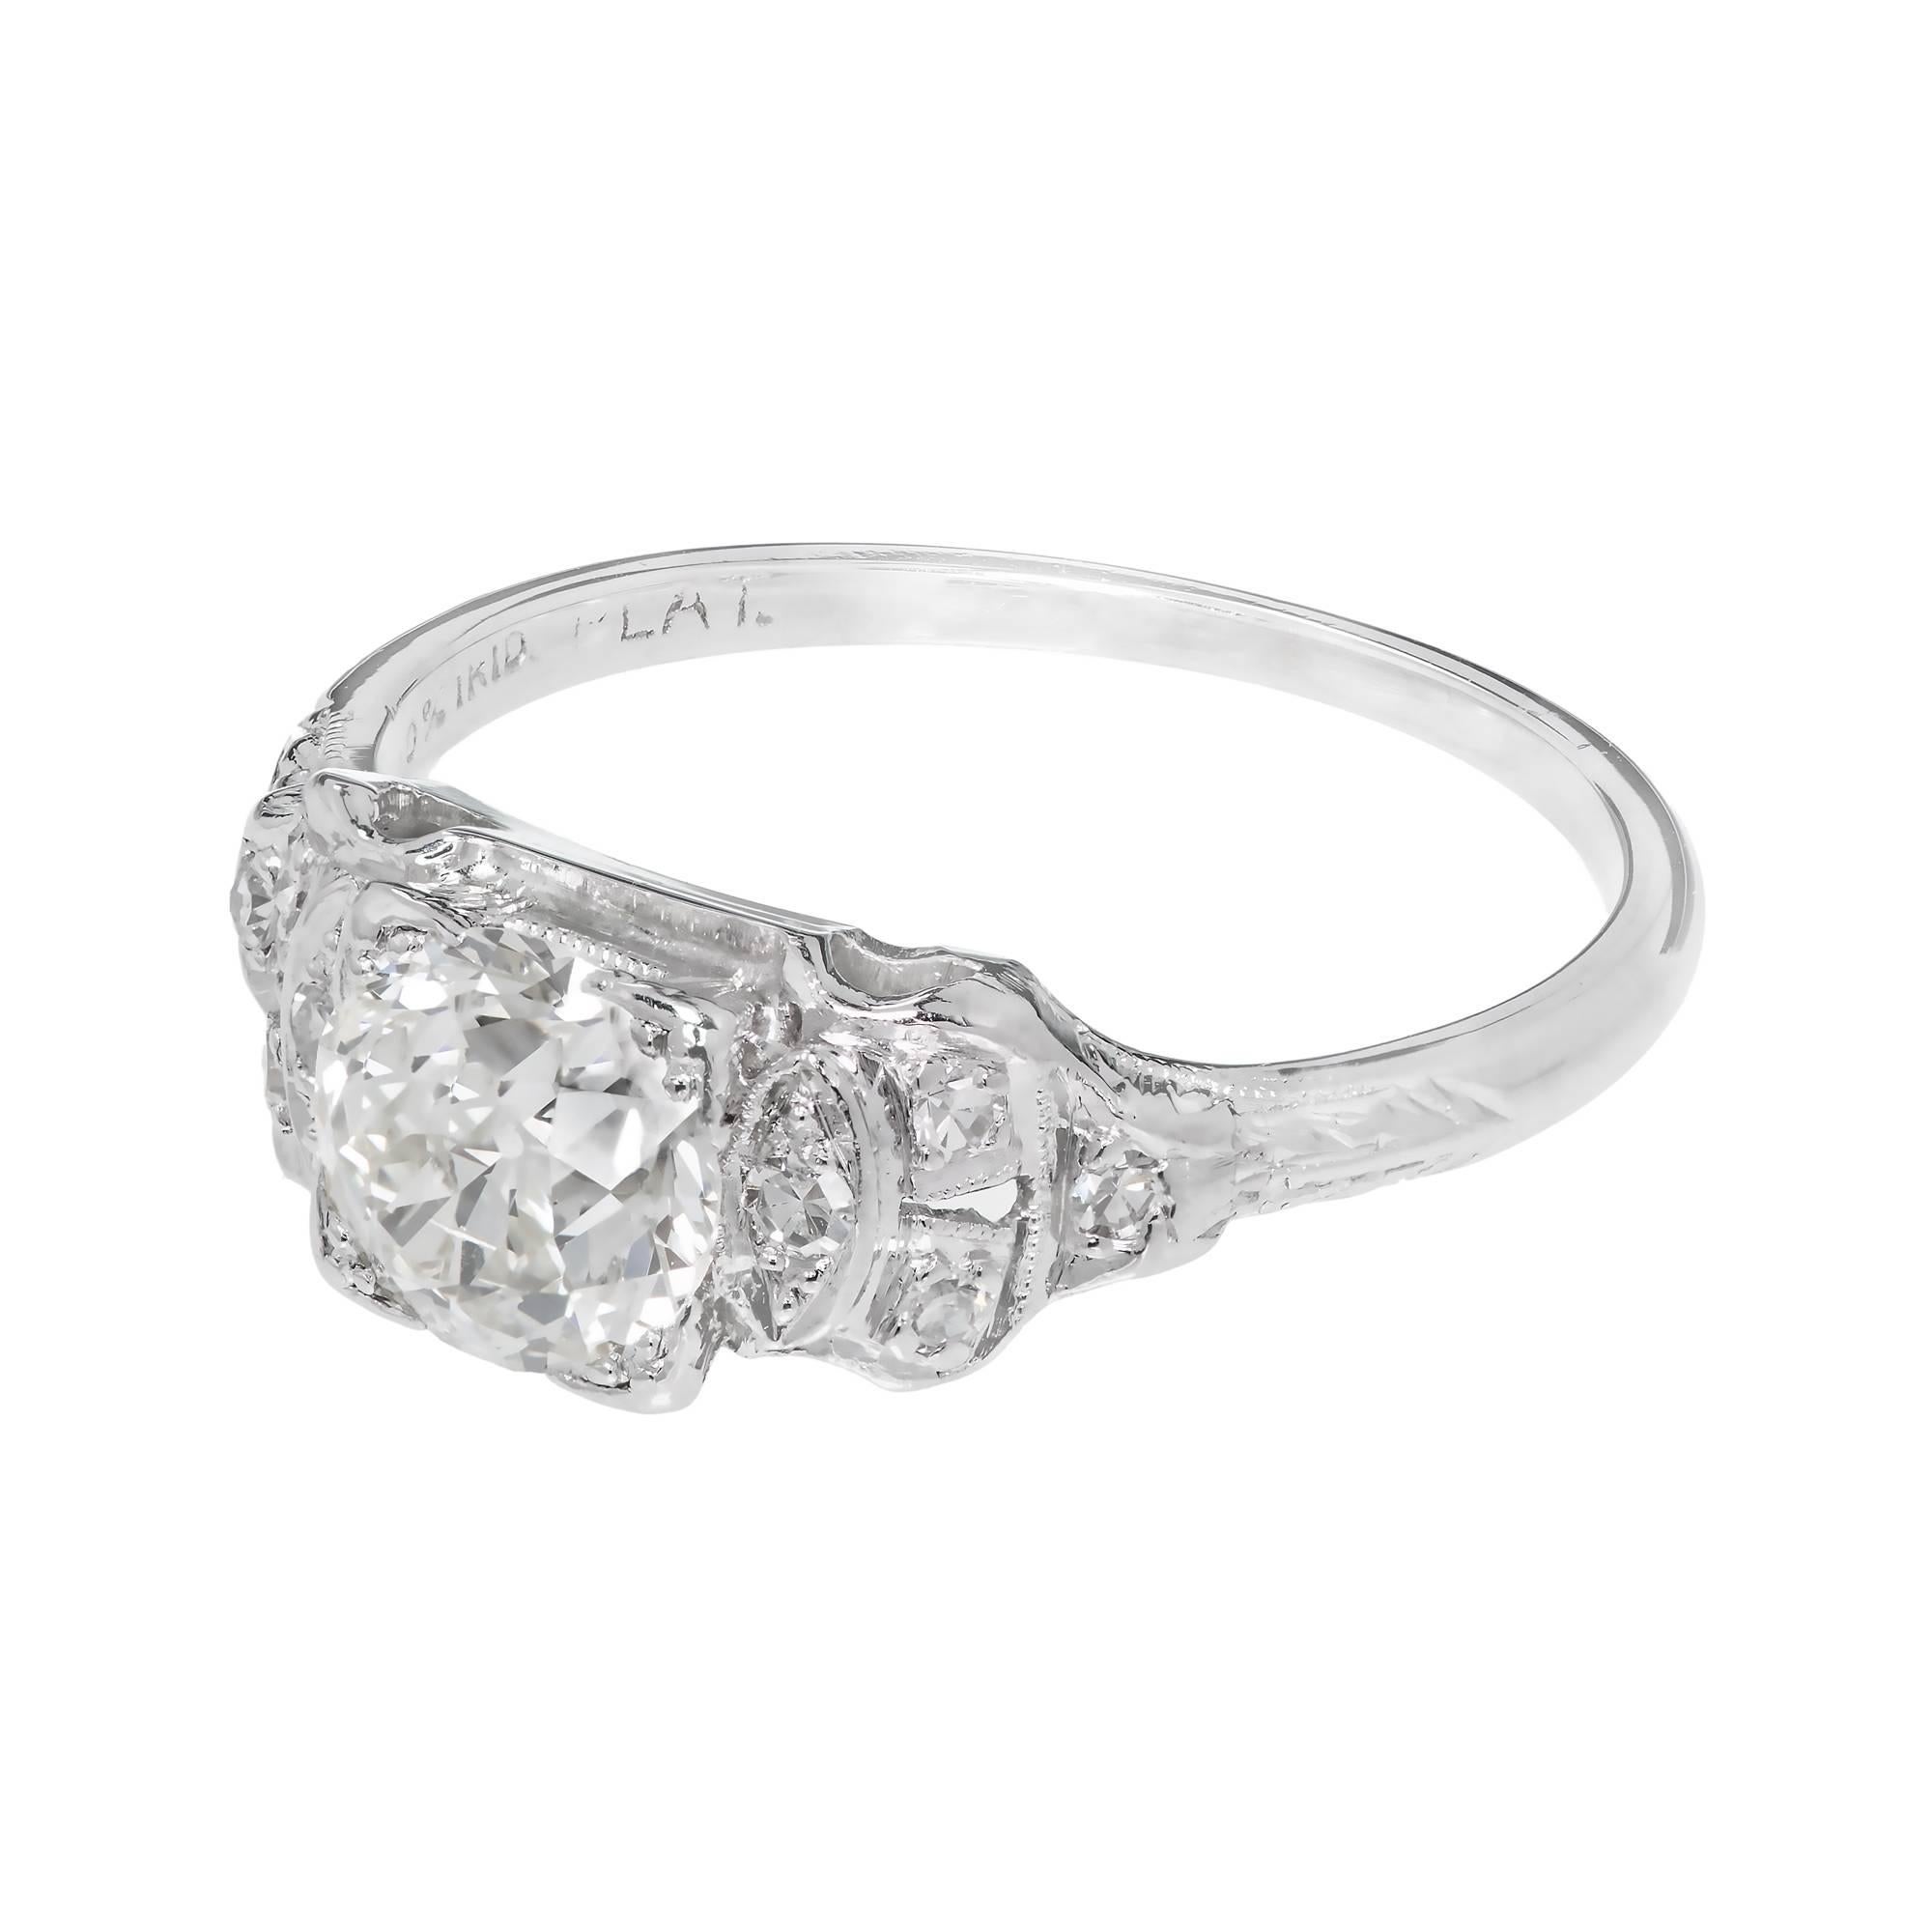 Art Deco 1920's Platin-Ring mit einem alten europäischen Diamanten Verlobungsring 0,91ct, Gesichter bis weiß mit nur einem Hauch von Körper Farbe, extra funkelnd mit erhöhten Krone und kleine Tabelle mit Single-Cut-Akzent Diamanten. 

1 Diamant im